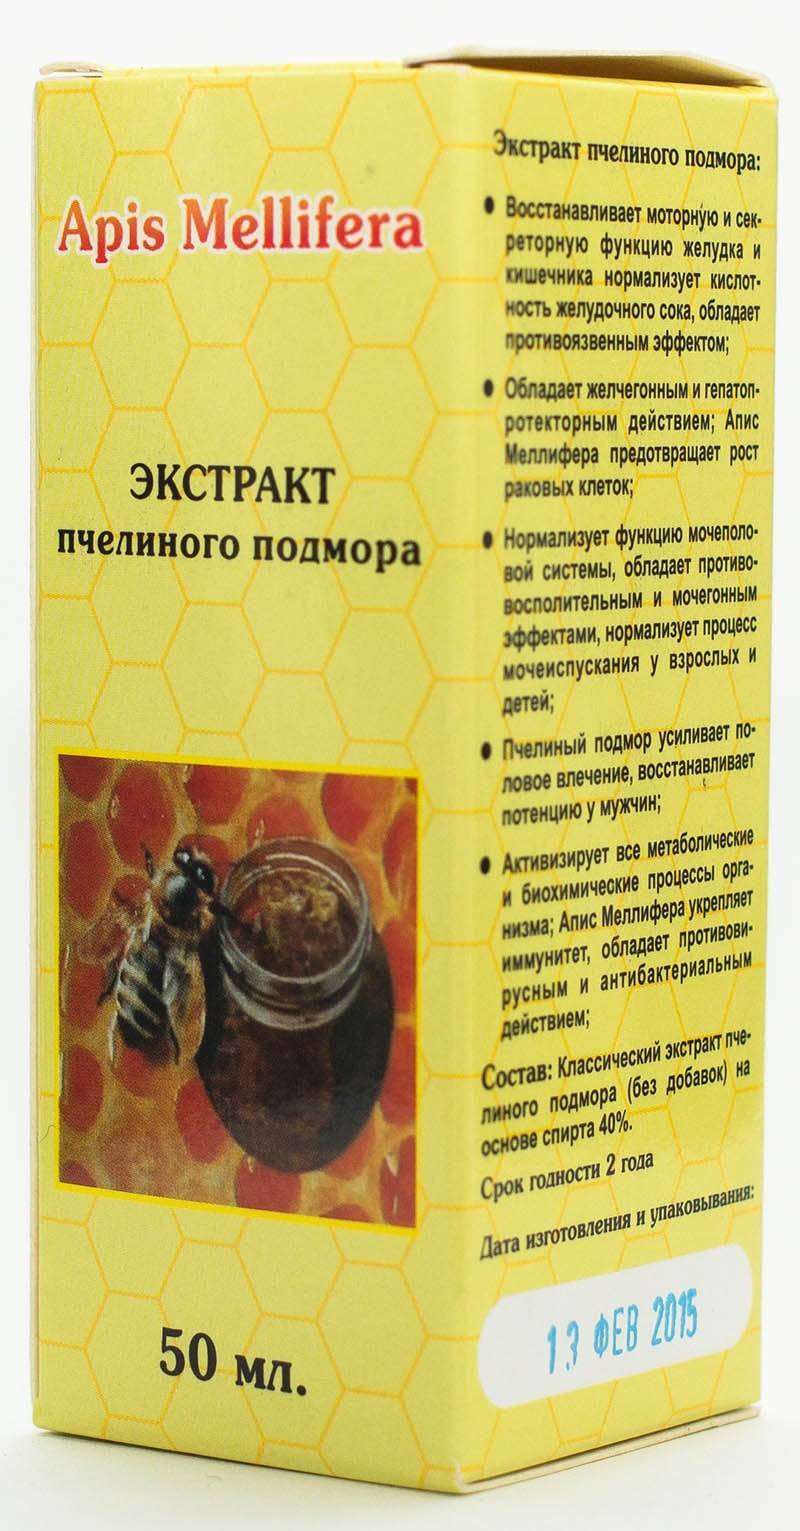 Пчелиный подмор: способы использования в качестве лечебного средства